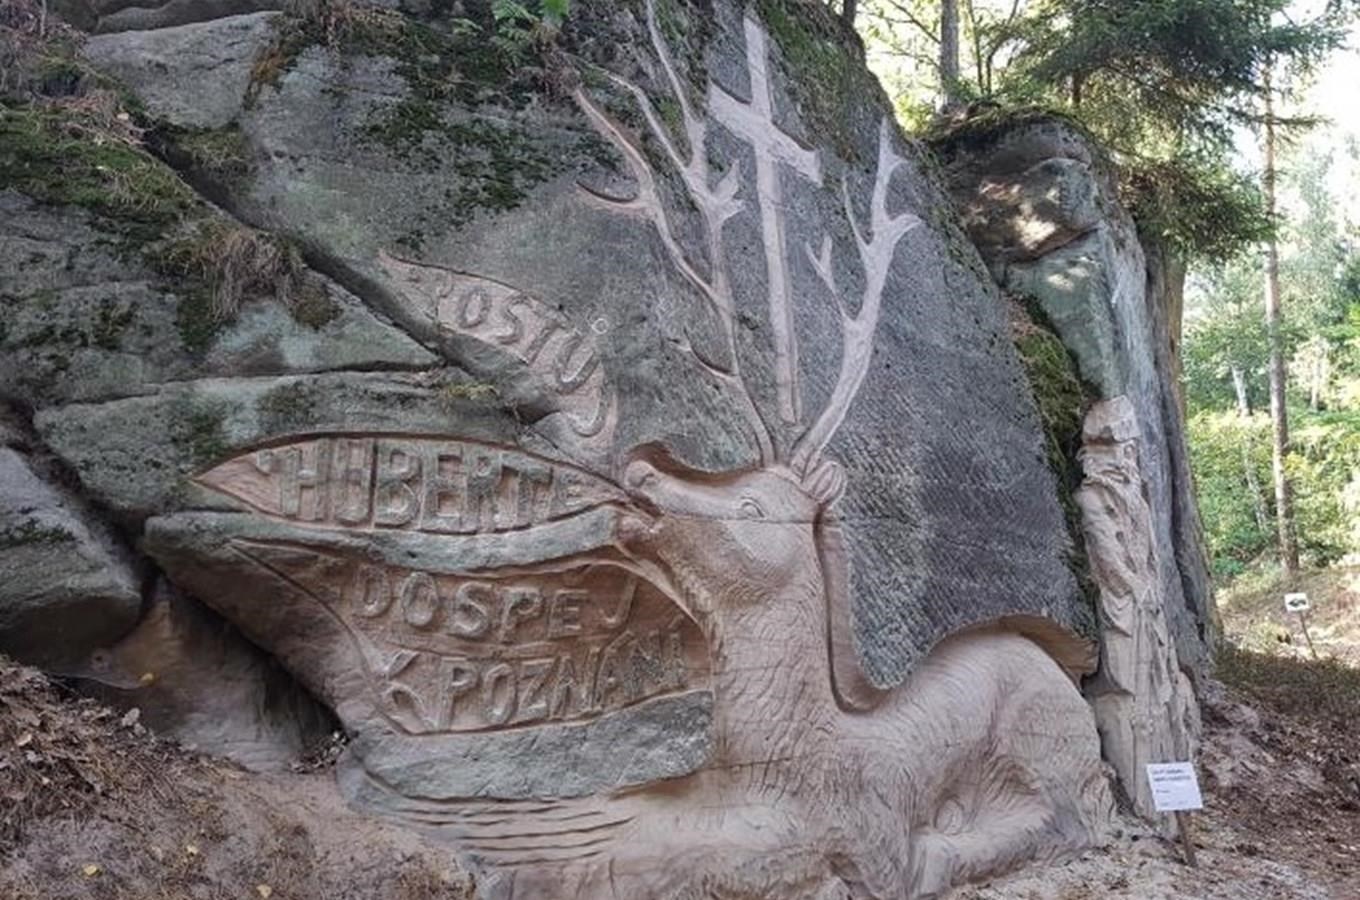 Stezka skalních reliéfů u obce Brniště na Českolipsku